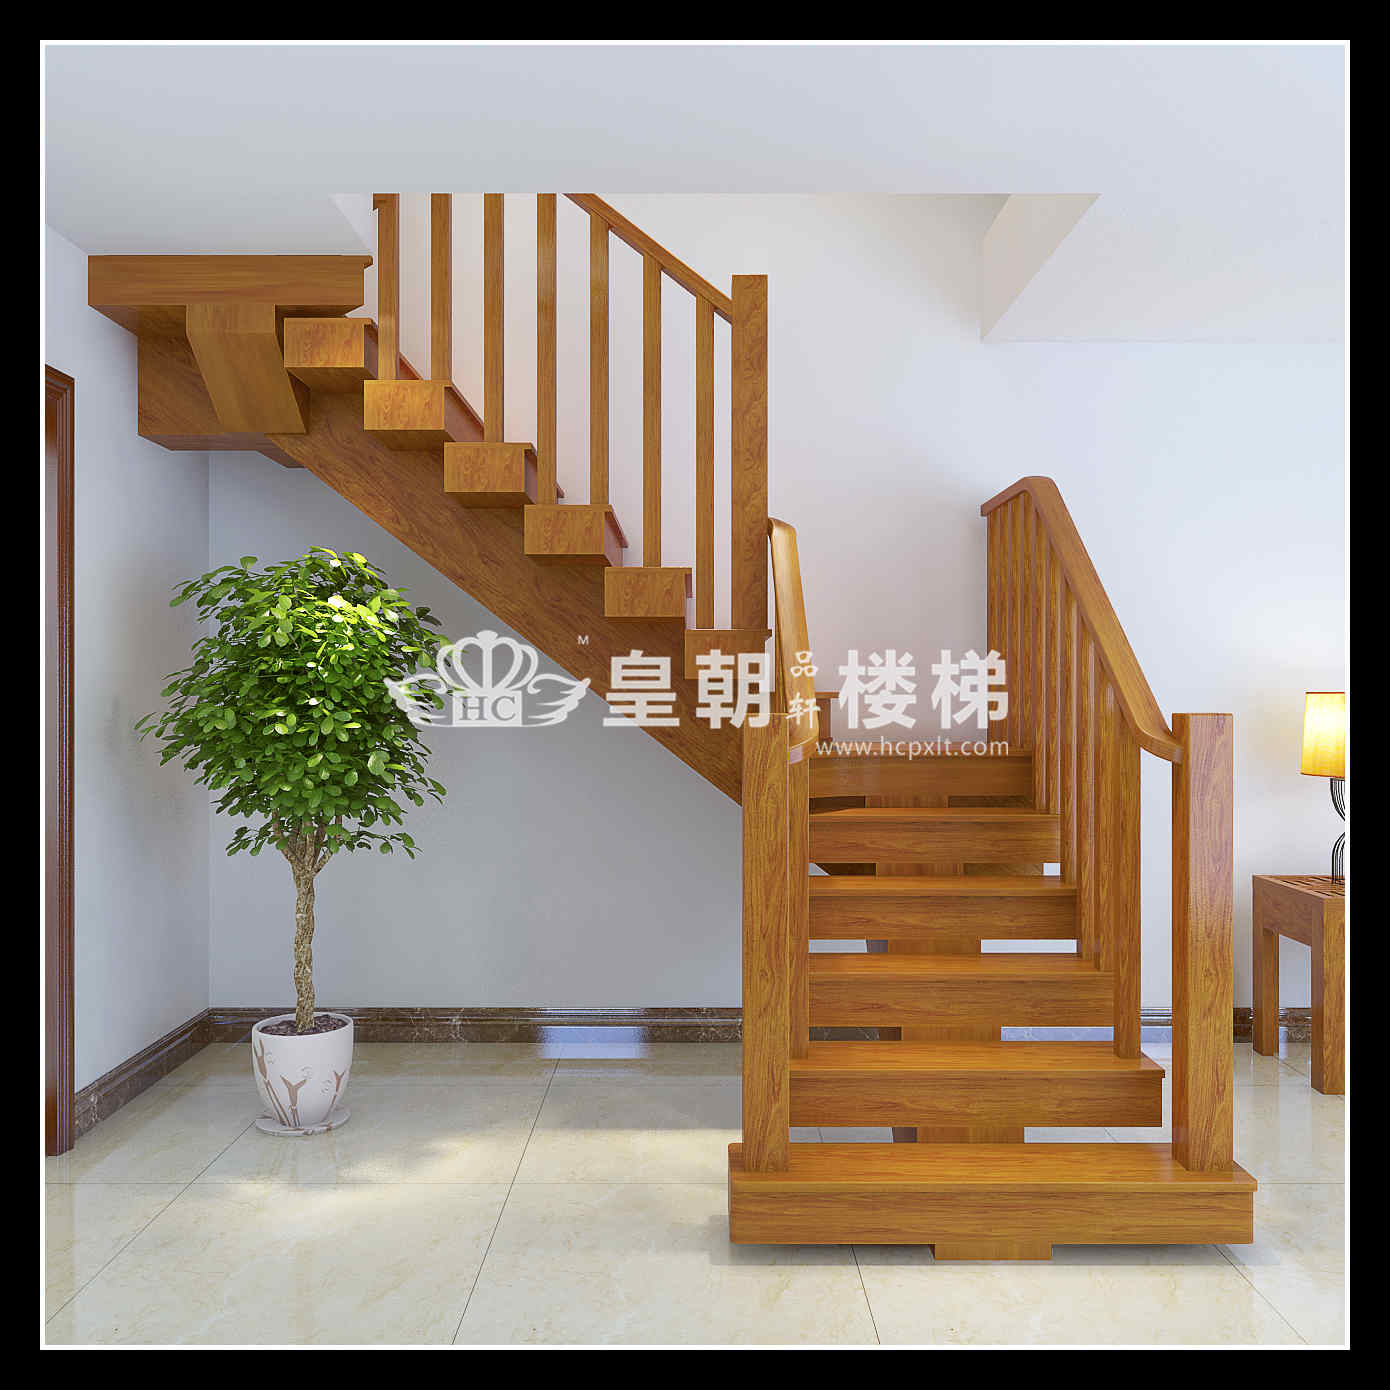 中式常规旋转楼梯扶手